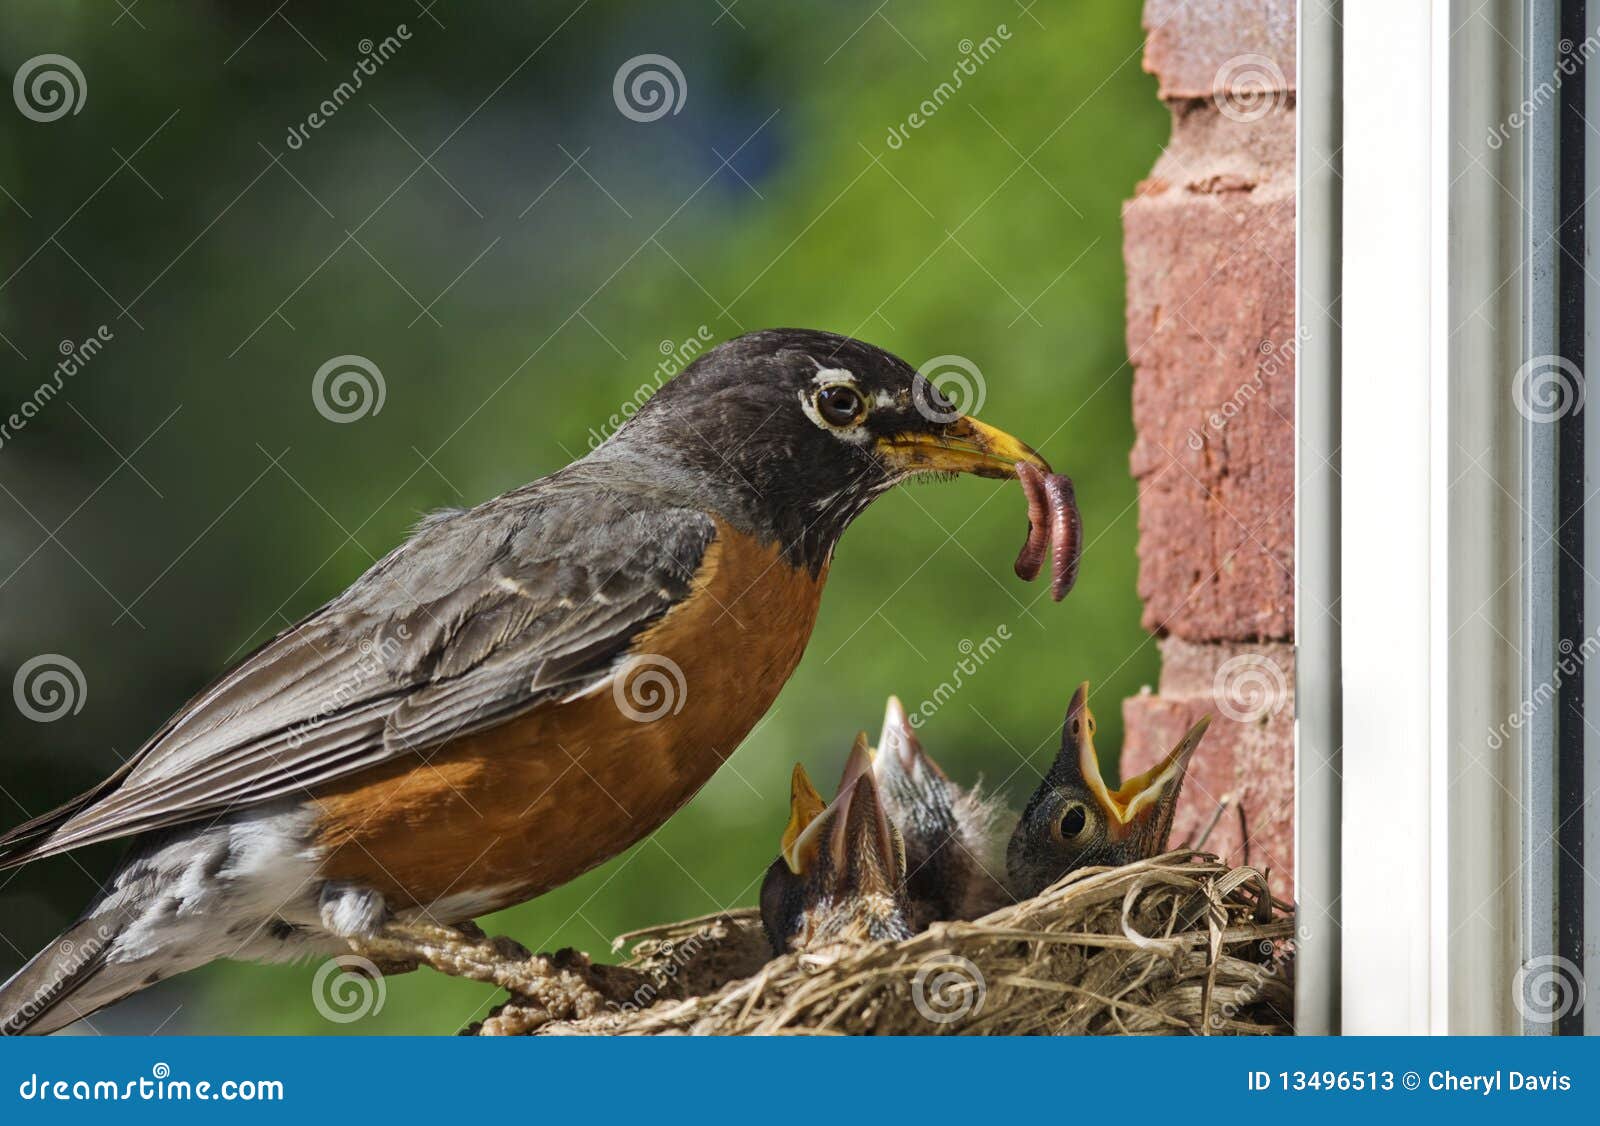 mother robin feeding babies